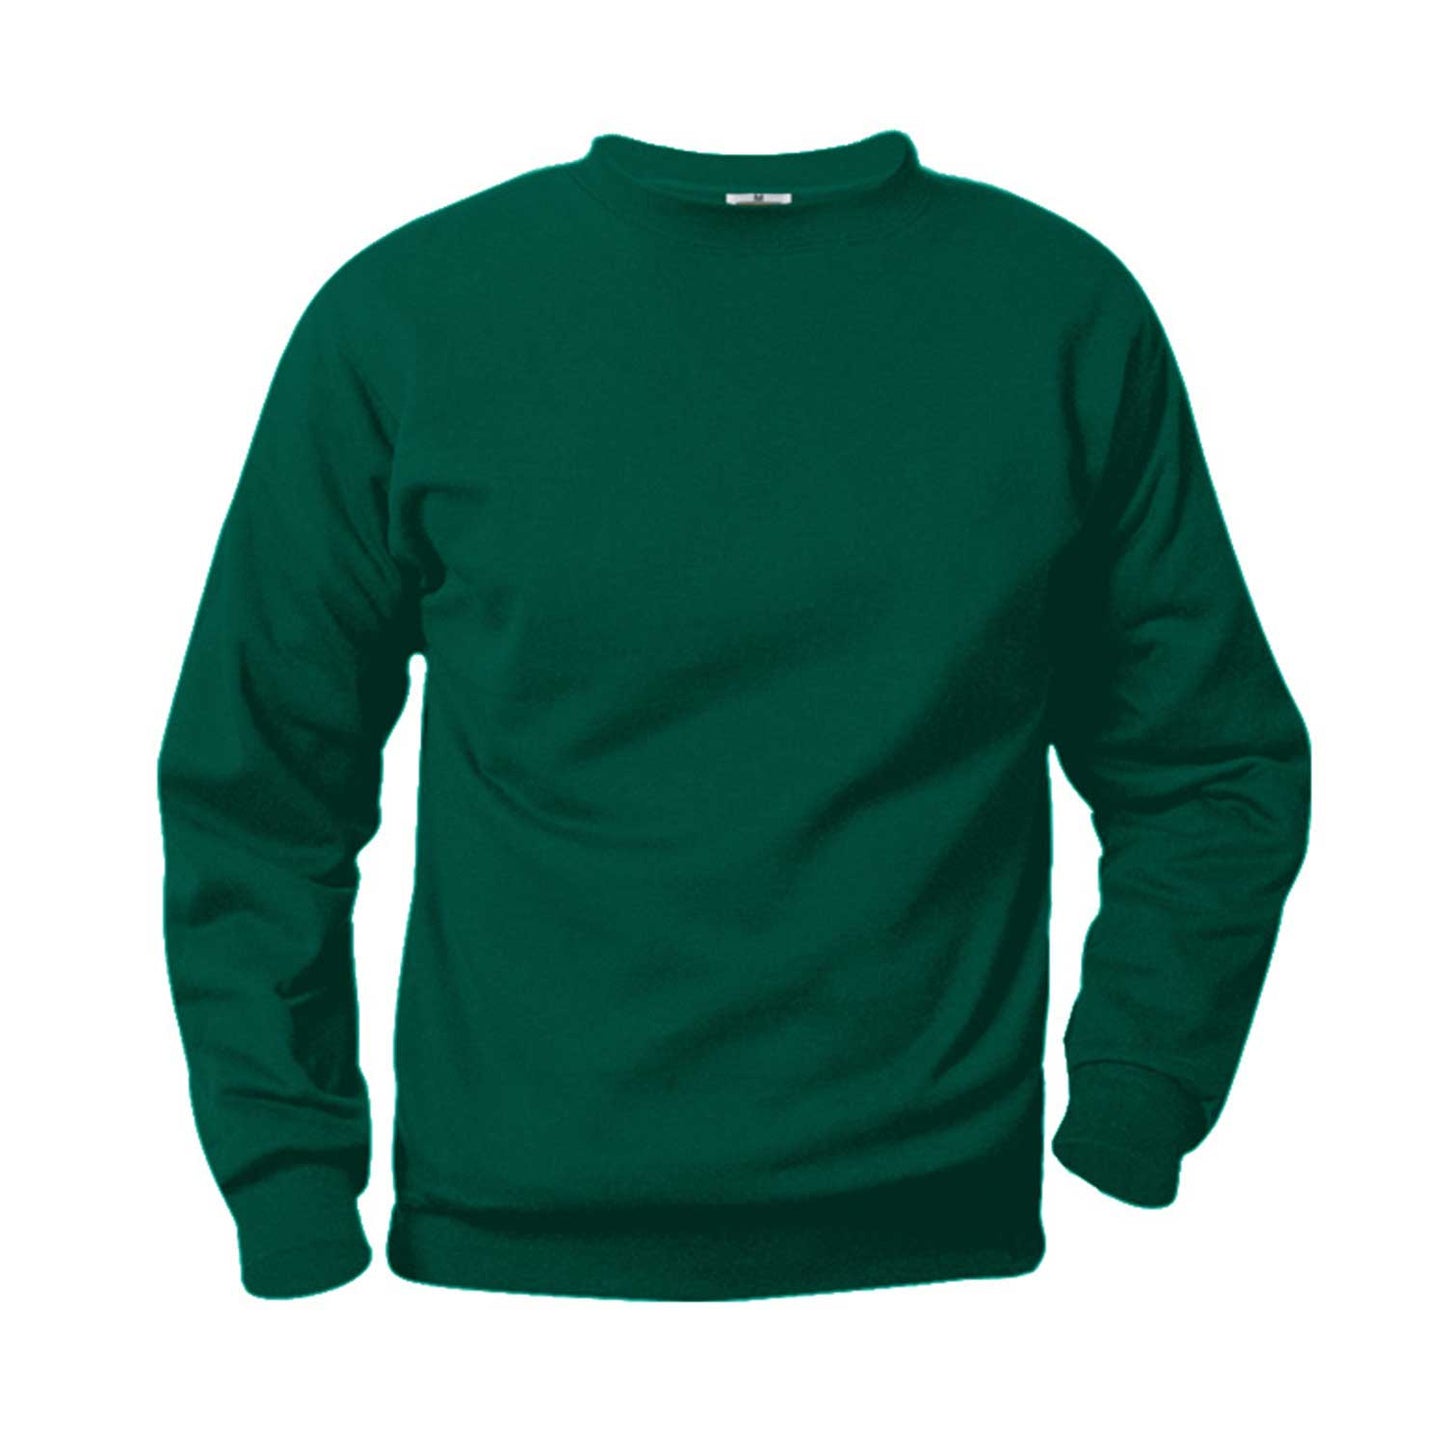 Unisex Crewneck Fleece Sweatshirt w/Logo - 1110